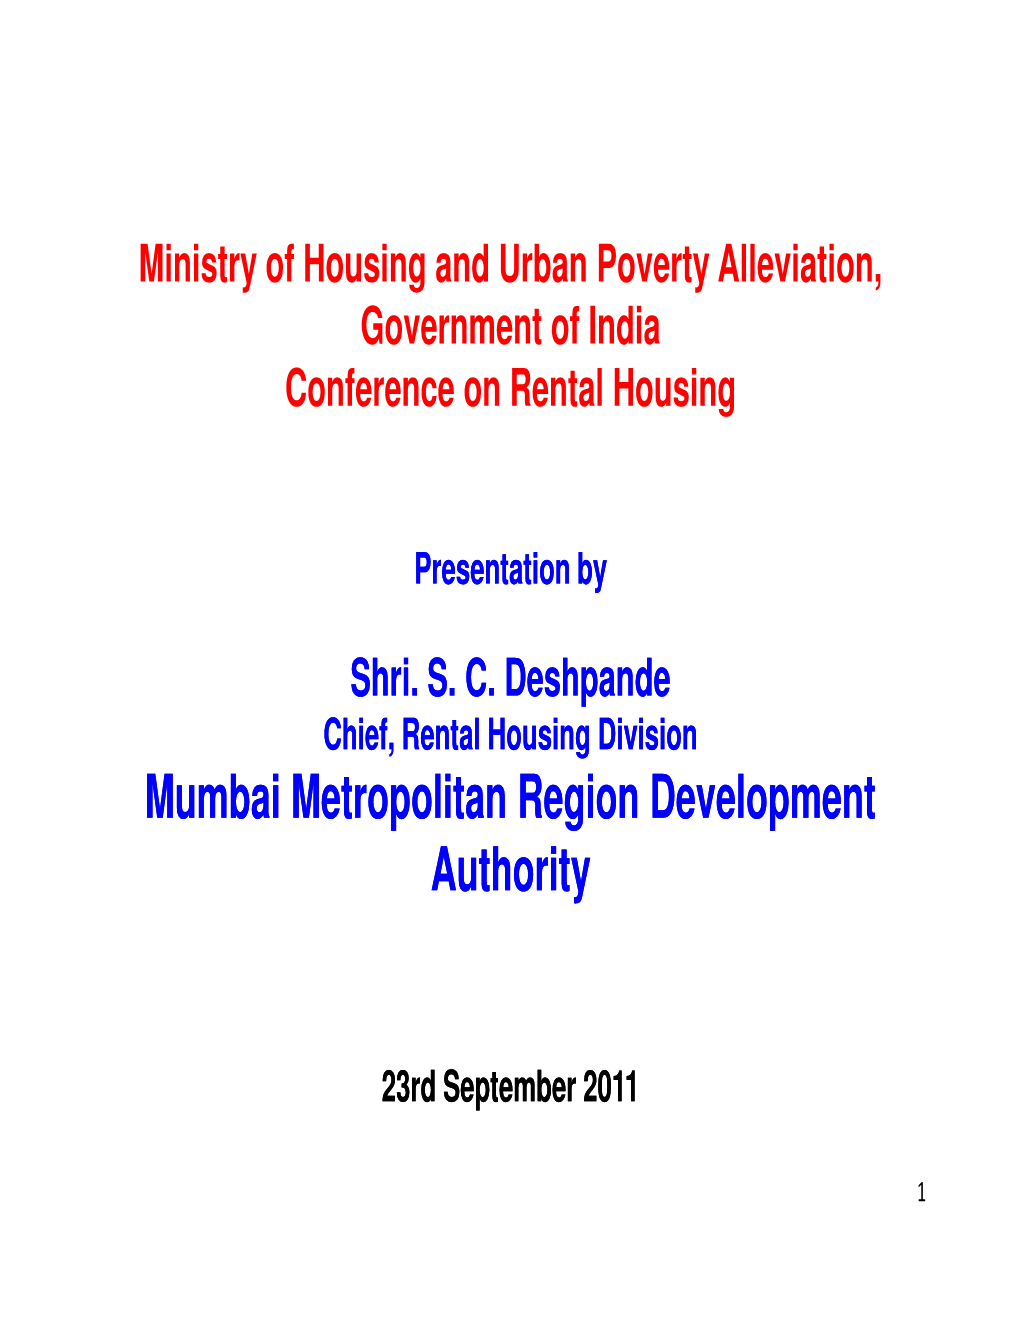 Mumbai Metropolitan Region Development Authority